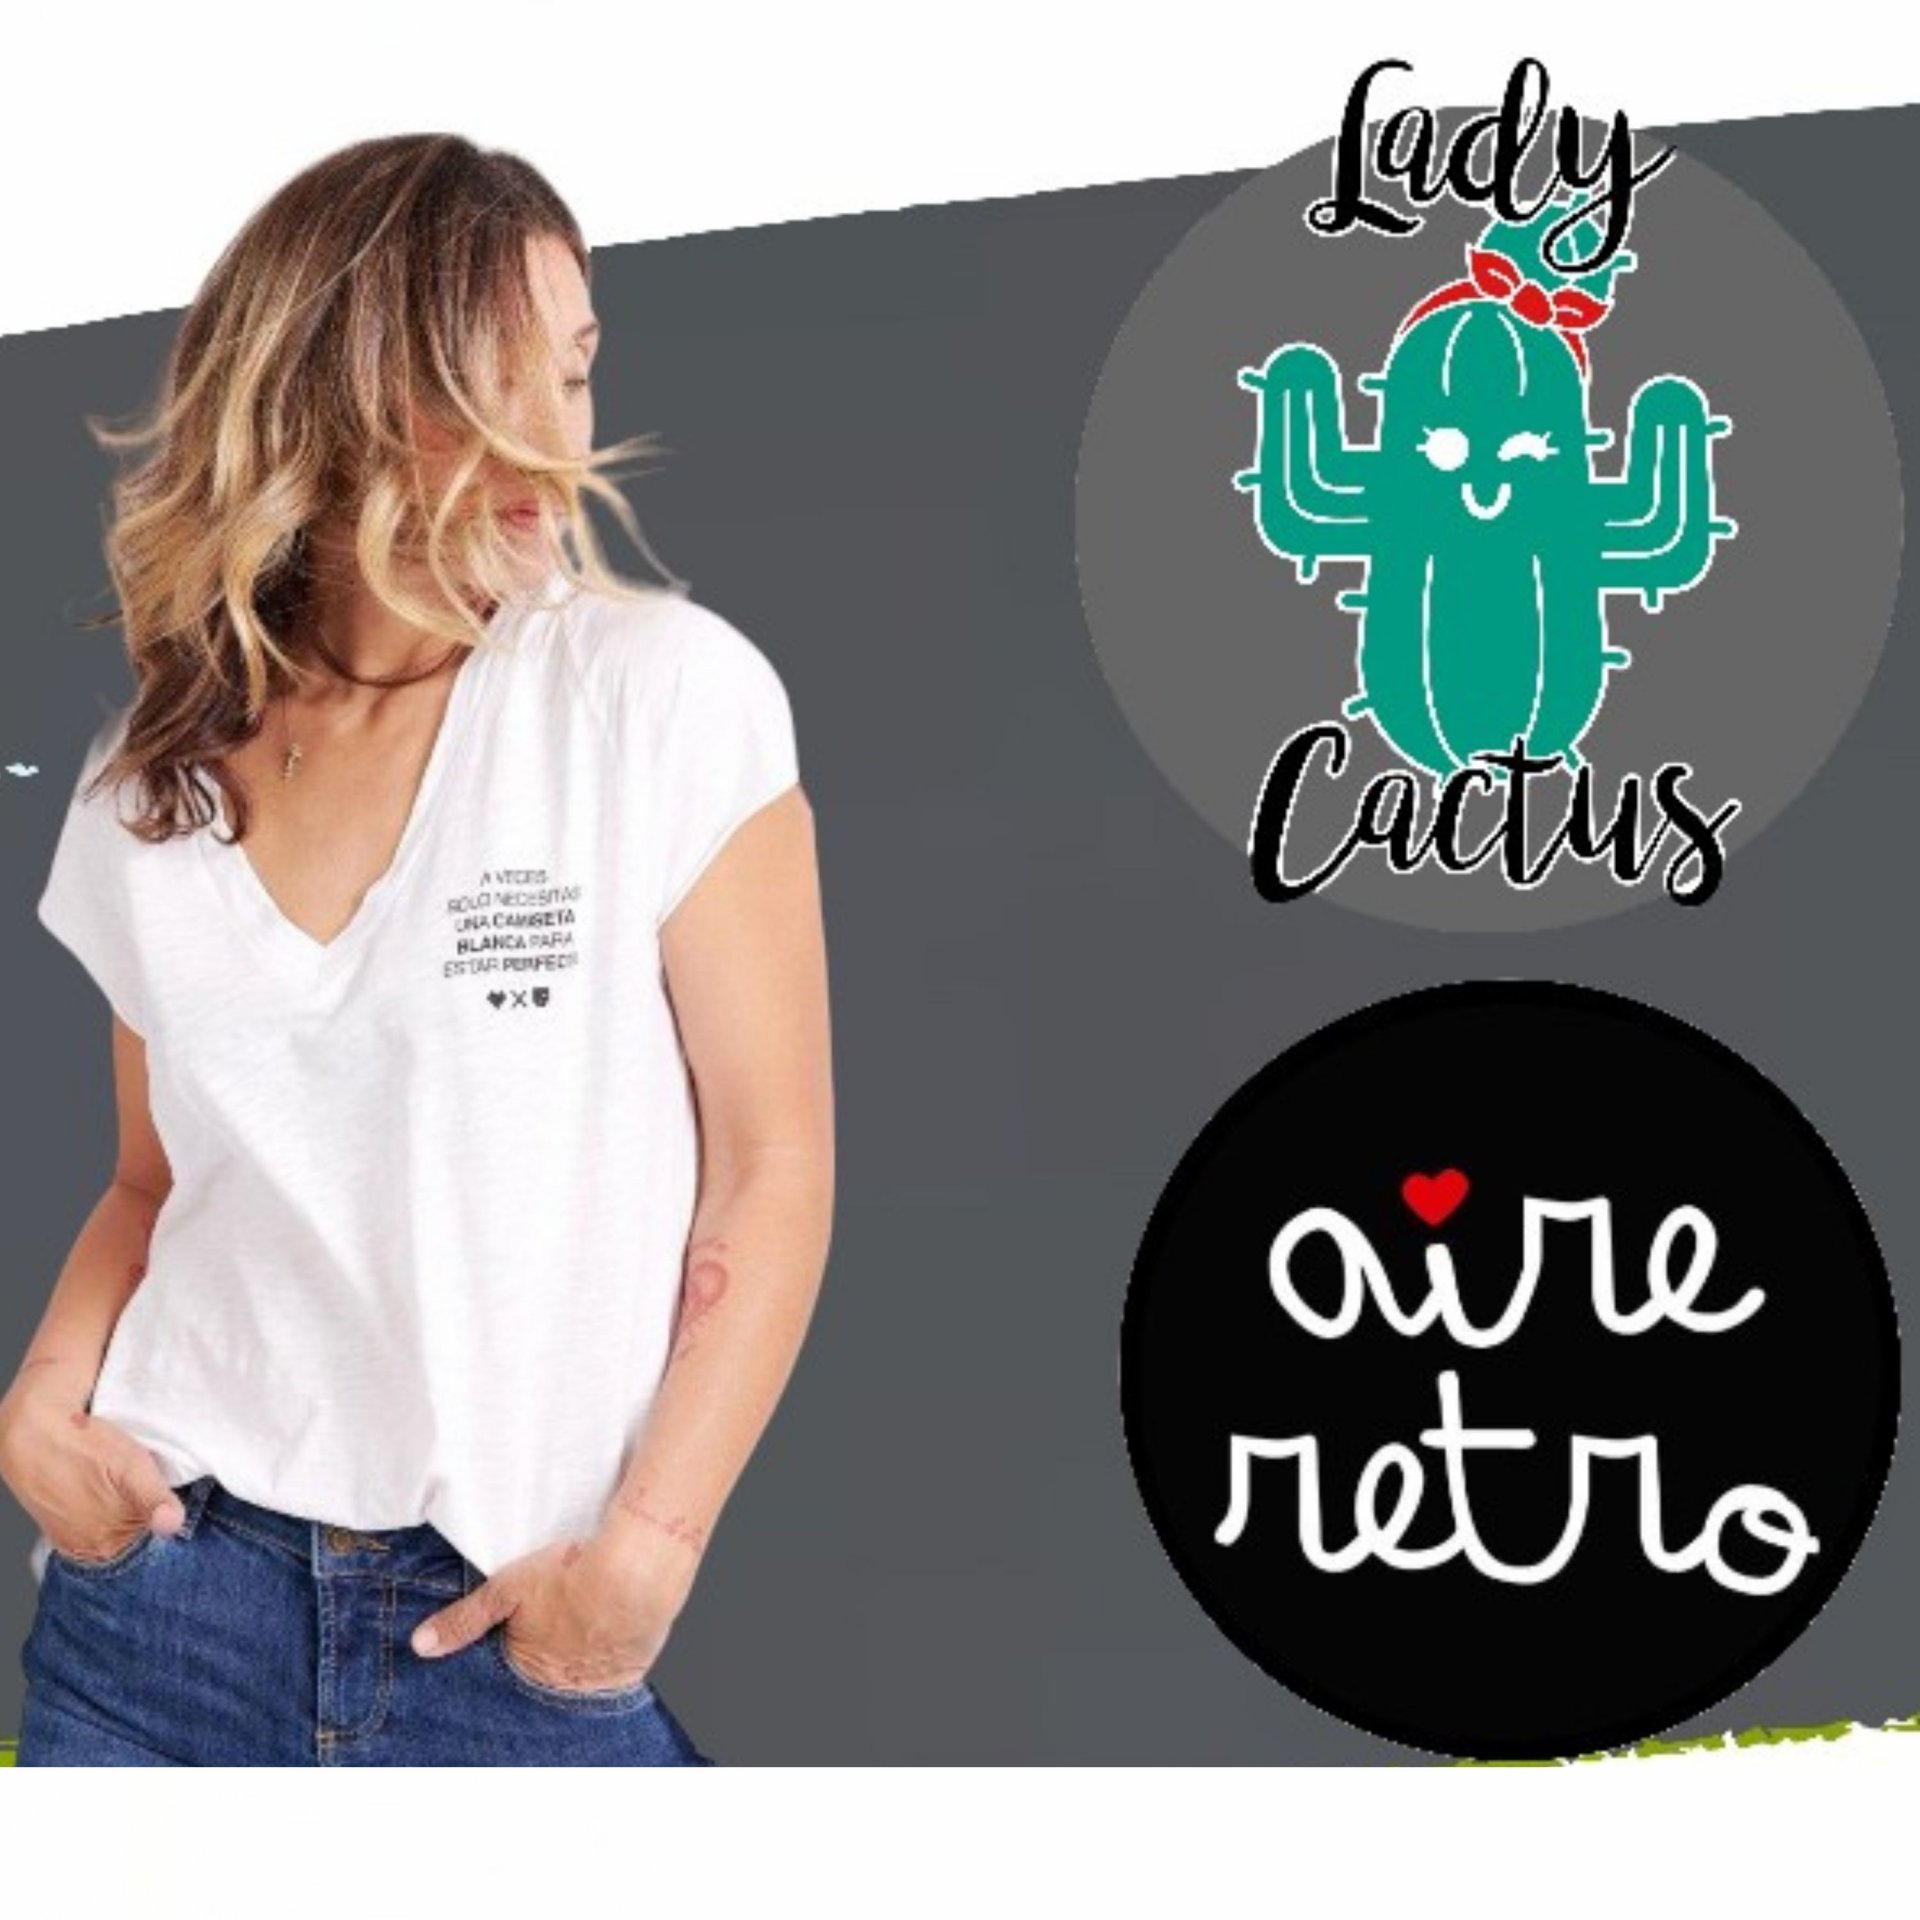 tienda-lady-cactus-aire-retro